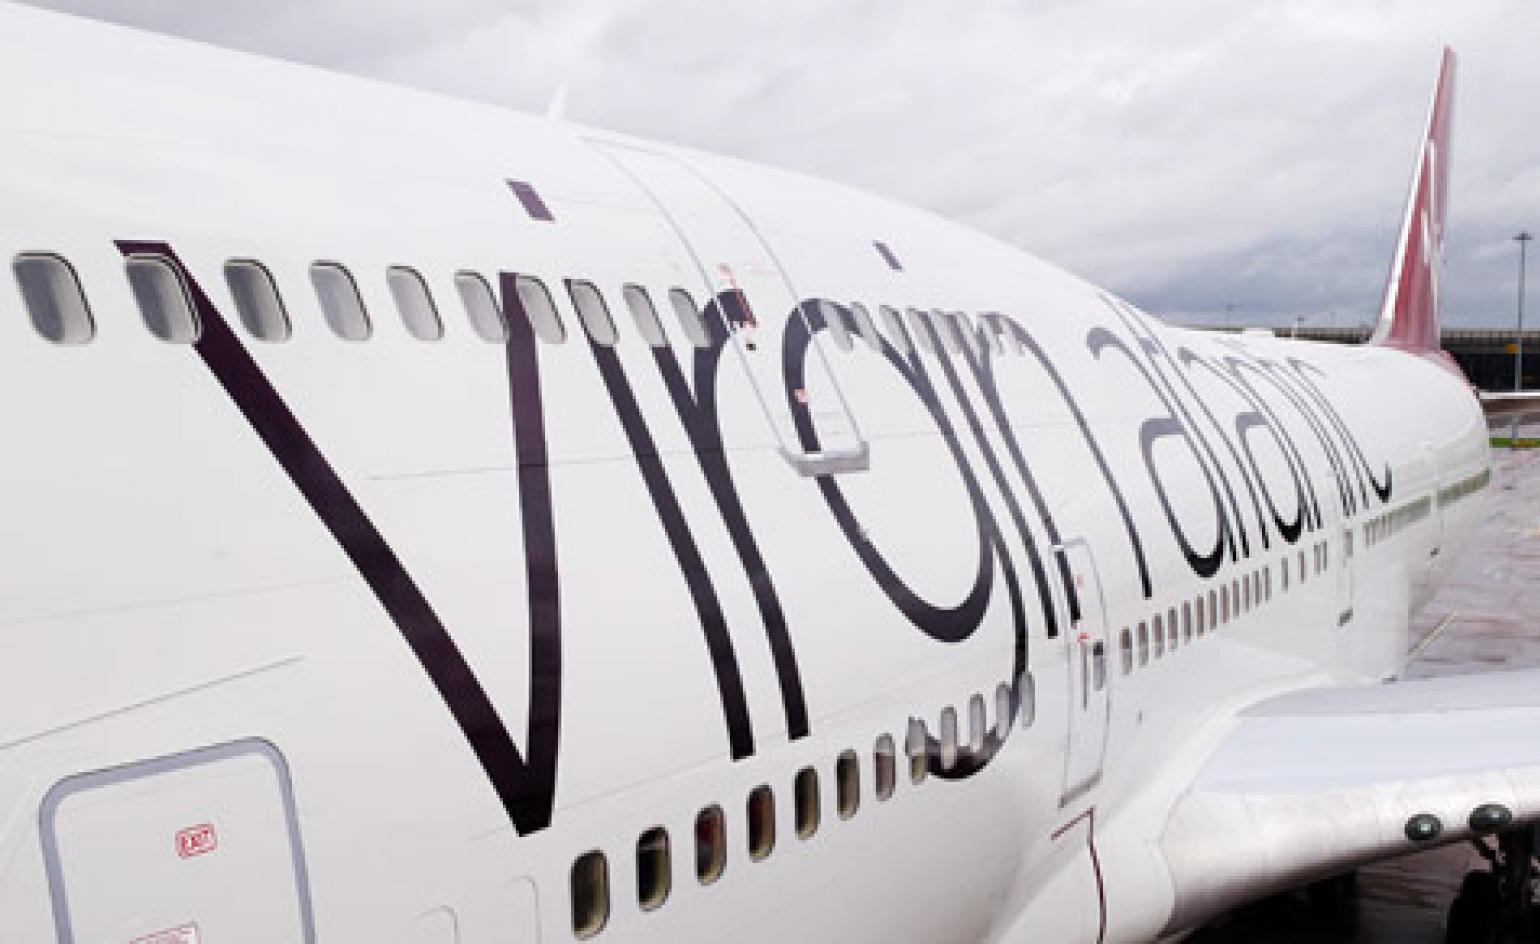 Virgin Atlantic's new look. Wallpaper*